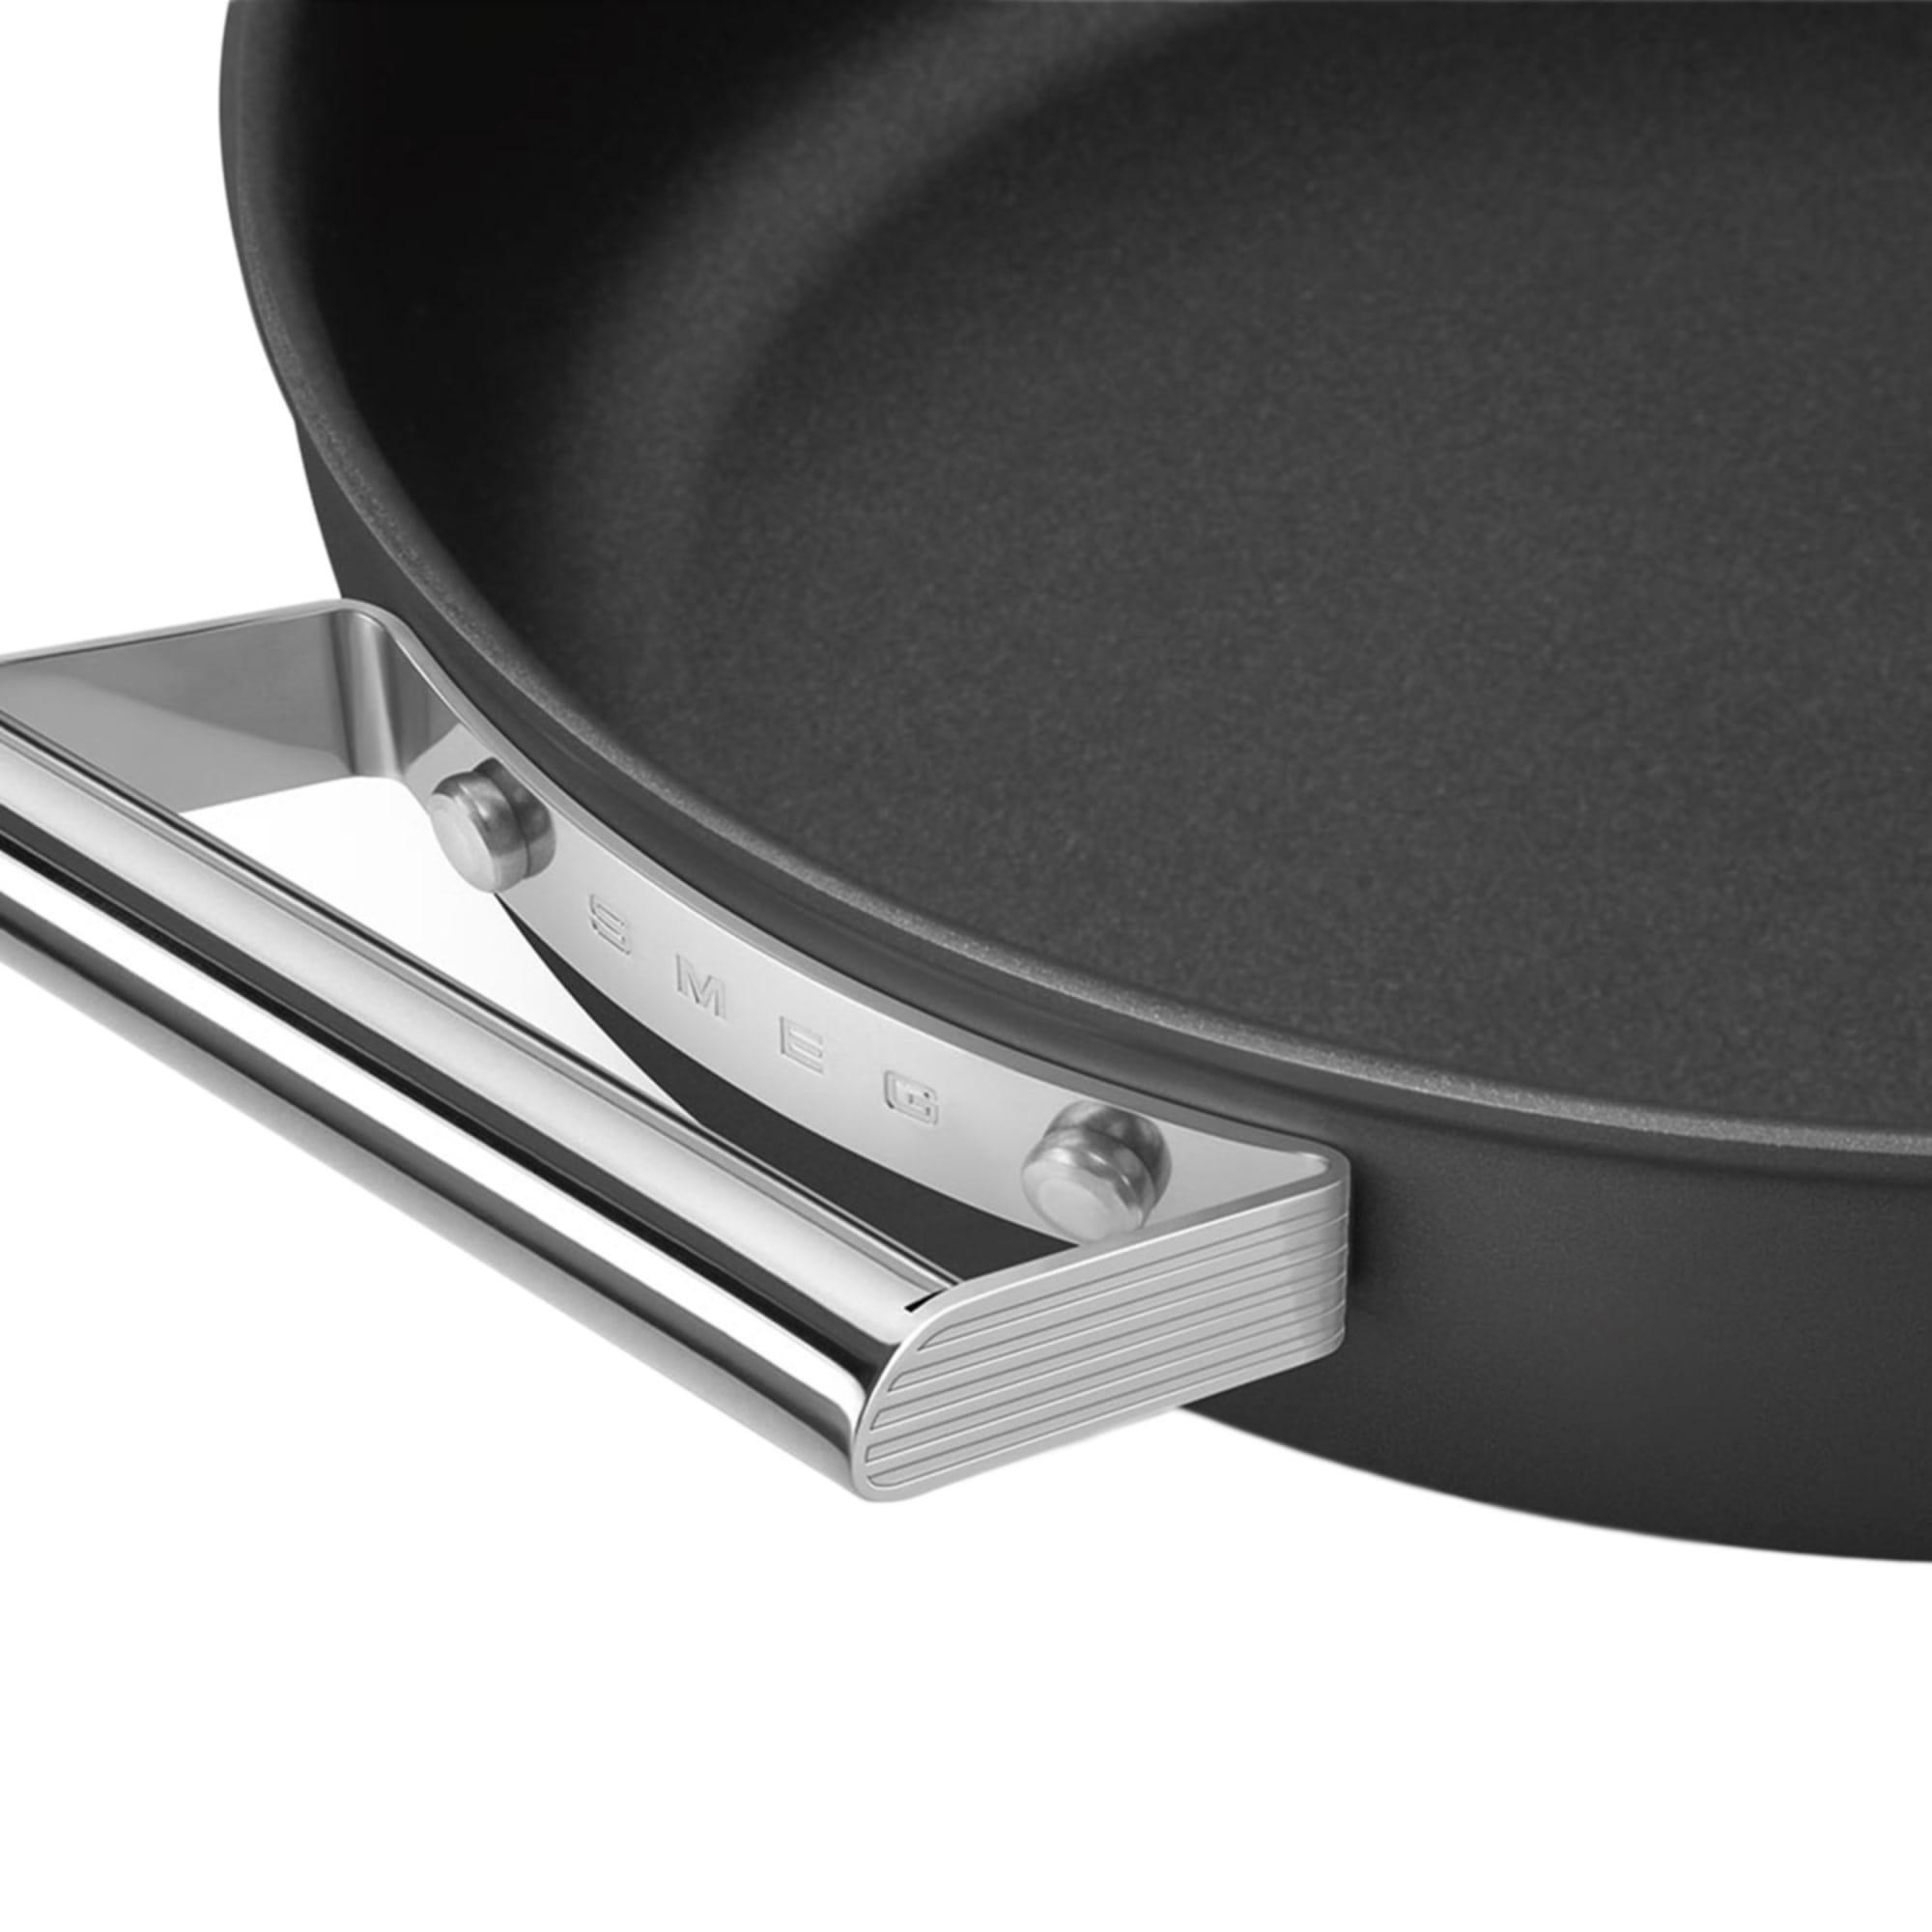 Smeg Non Stick Chef's Pan with Lid 28cm - 3.7L Black Image 9